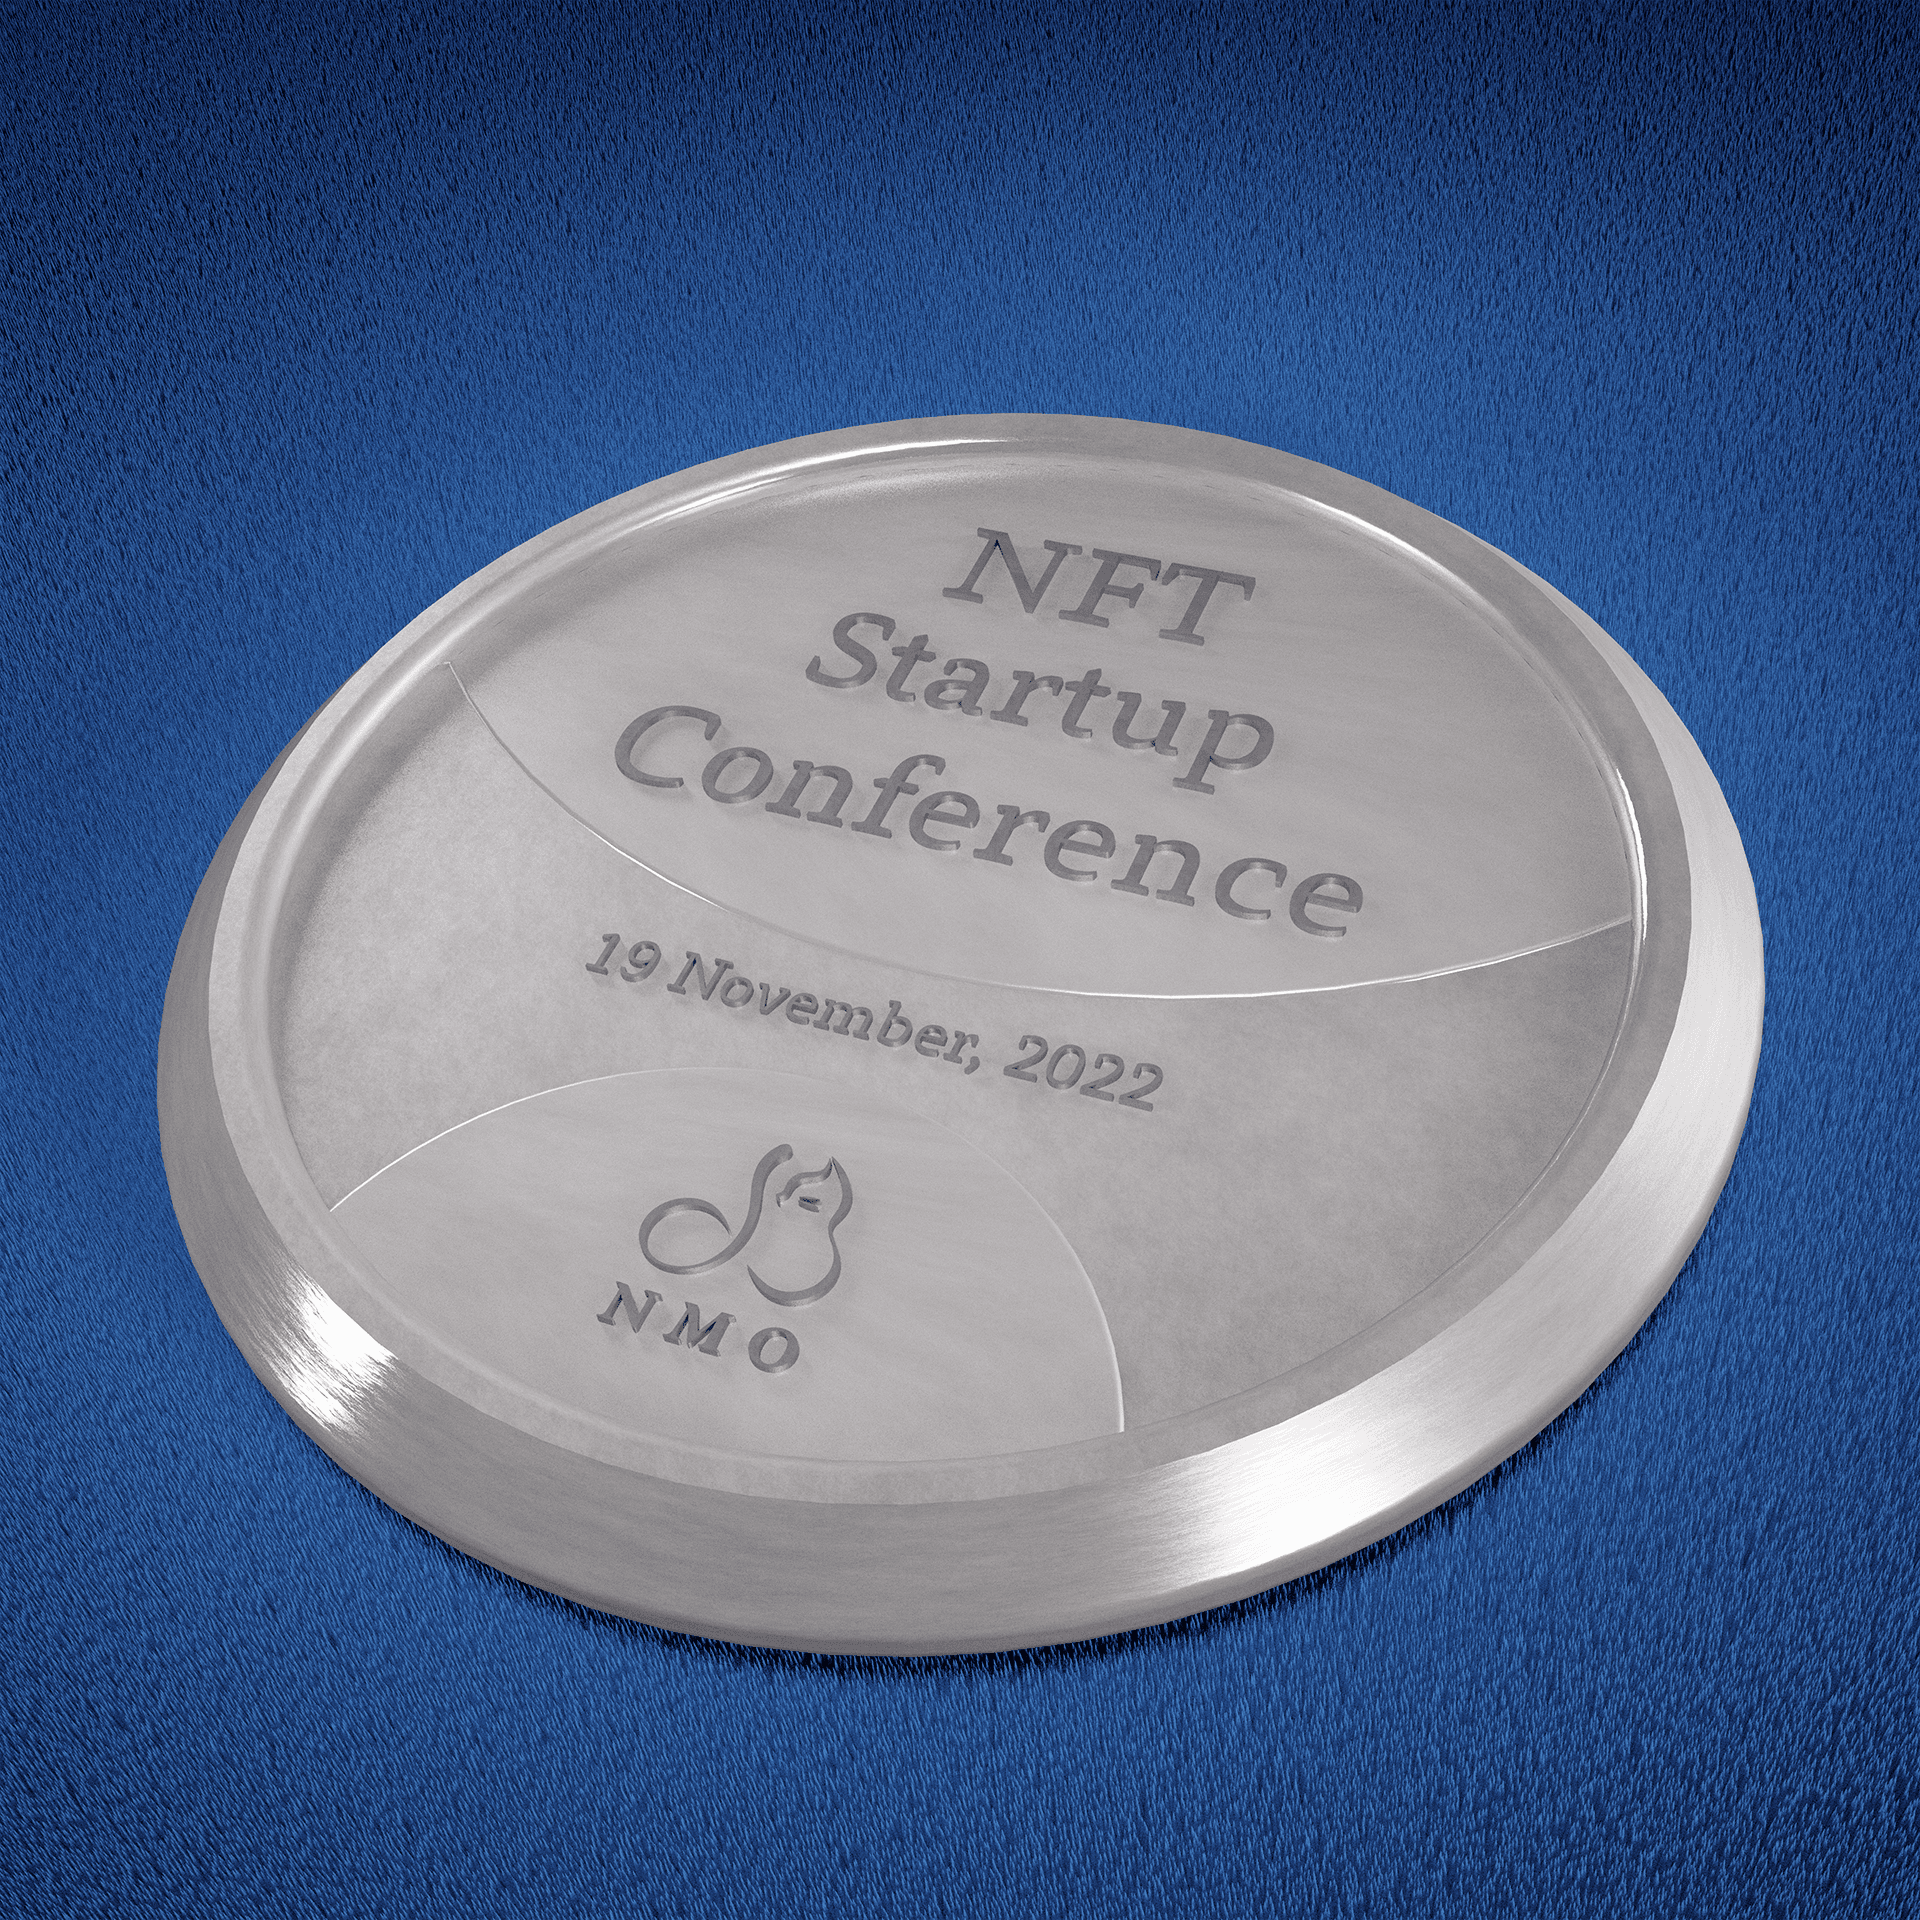 NFT Startup Conference 19th Nov. 2022